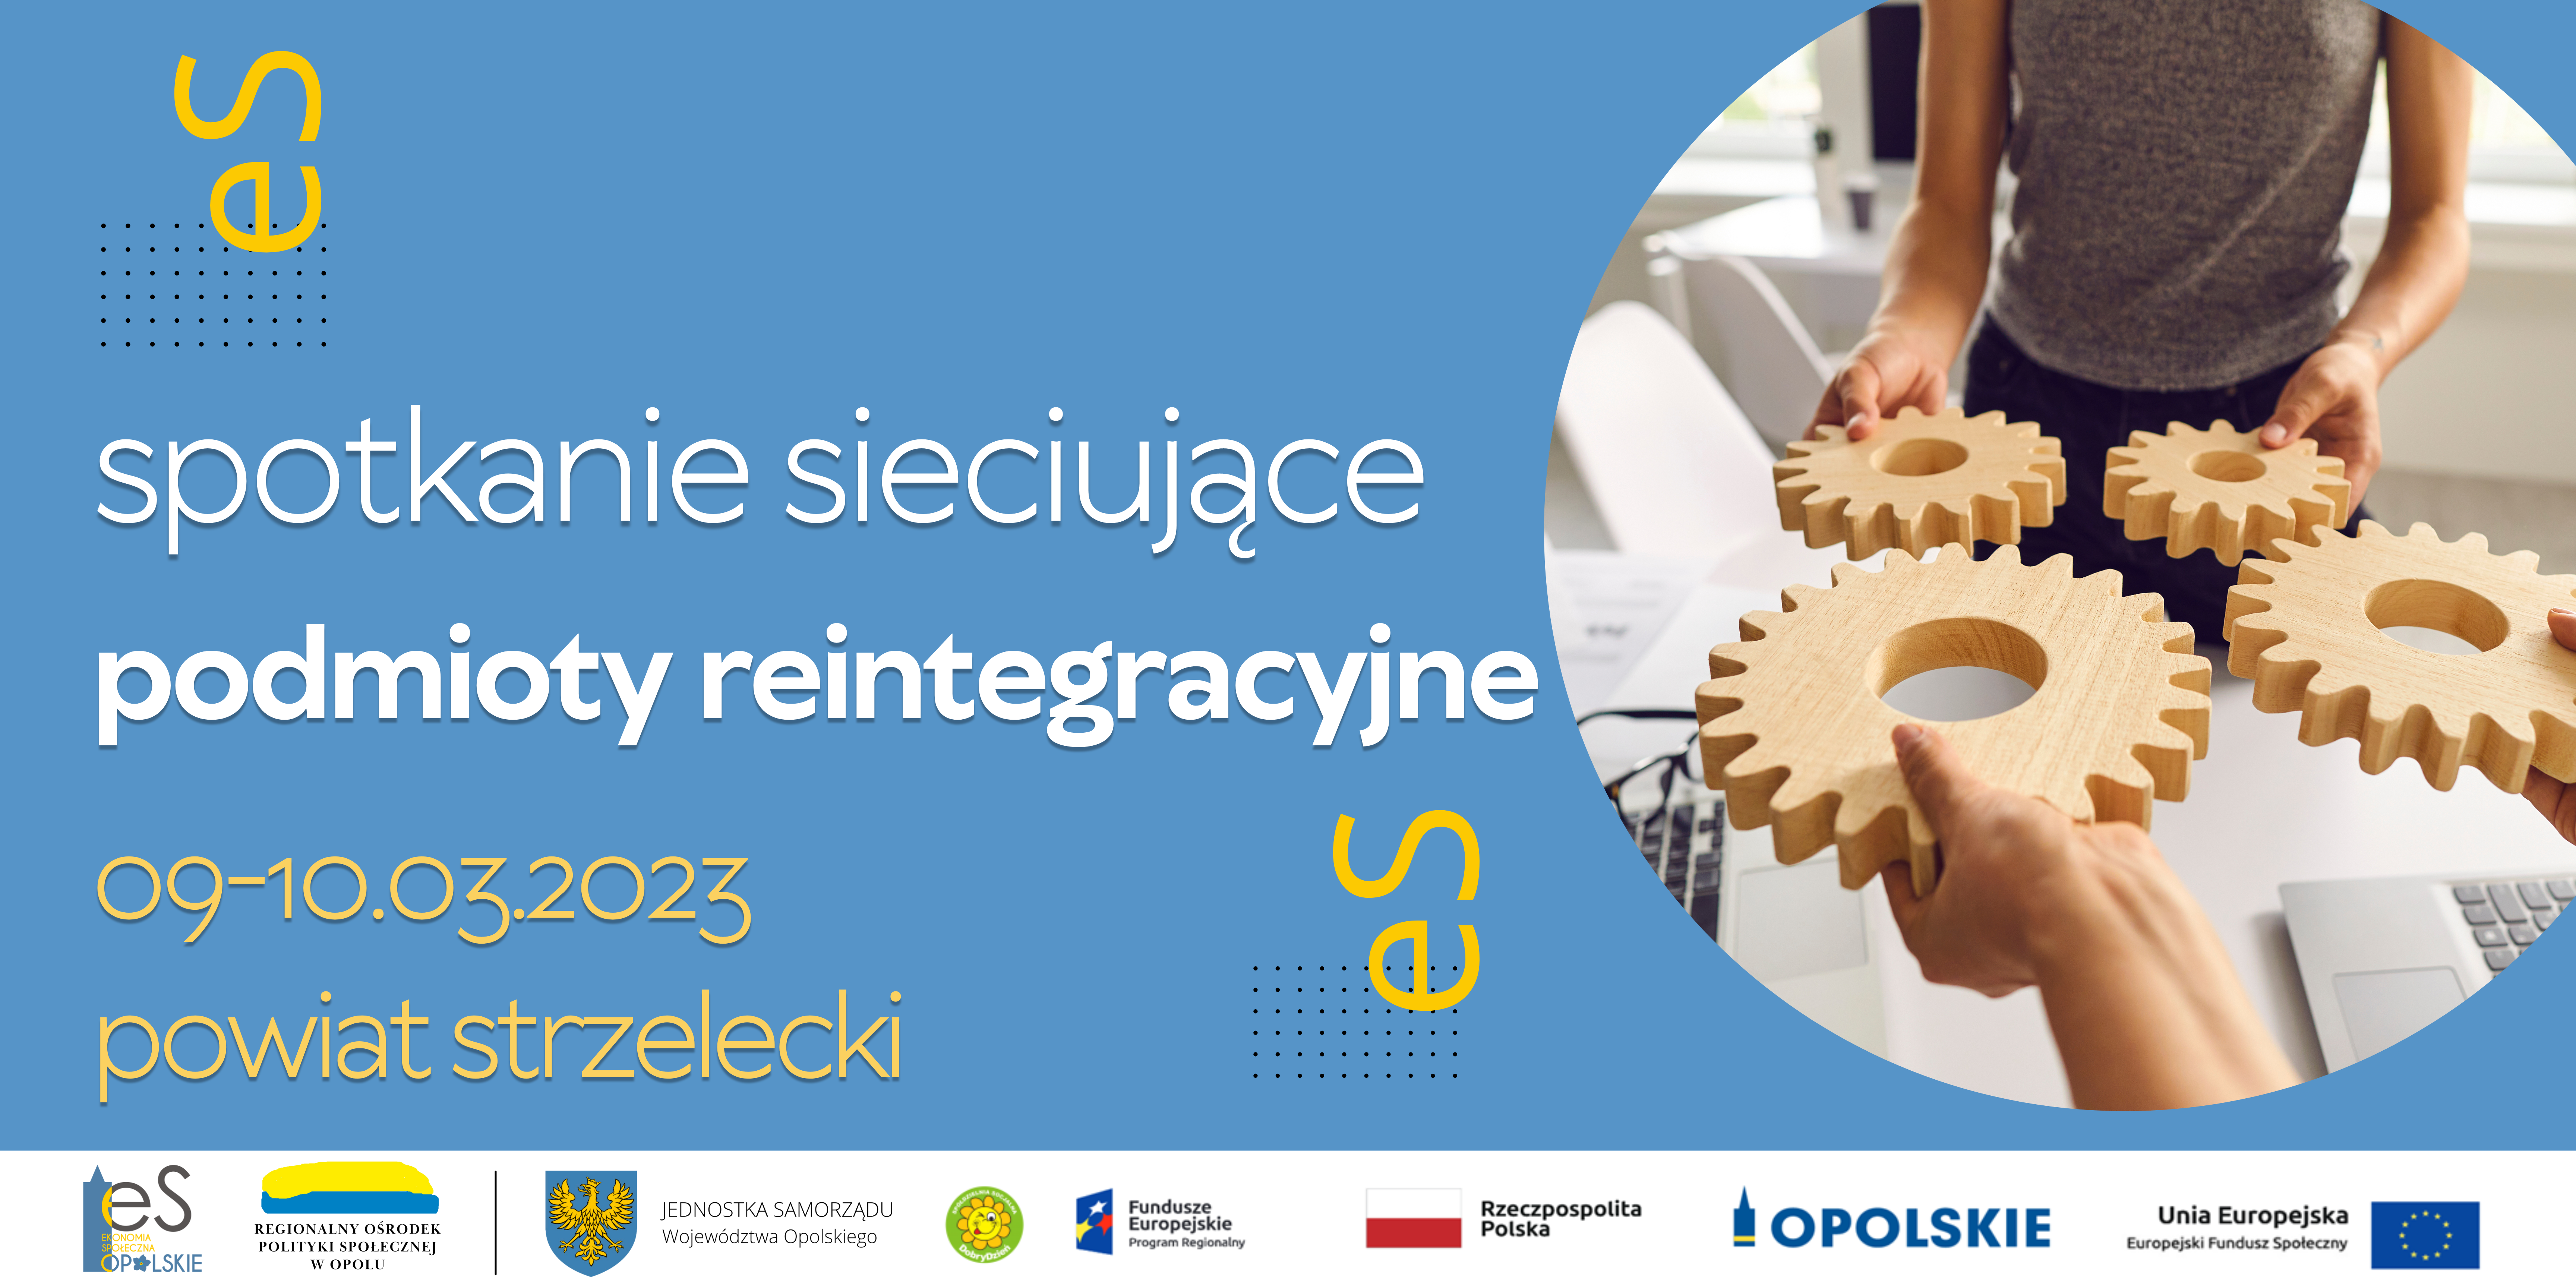 Zapraszamy do udziału w 2-dniowych spotkaniach sieciujących podmioty reintegracyjne z województwa opolskiego